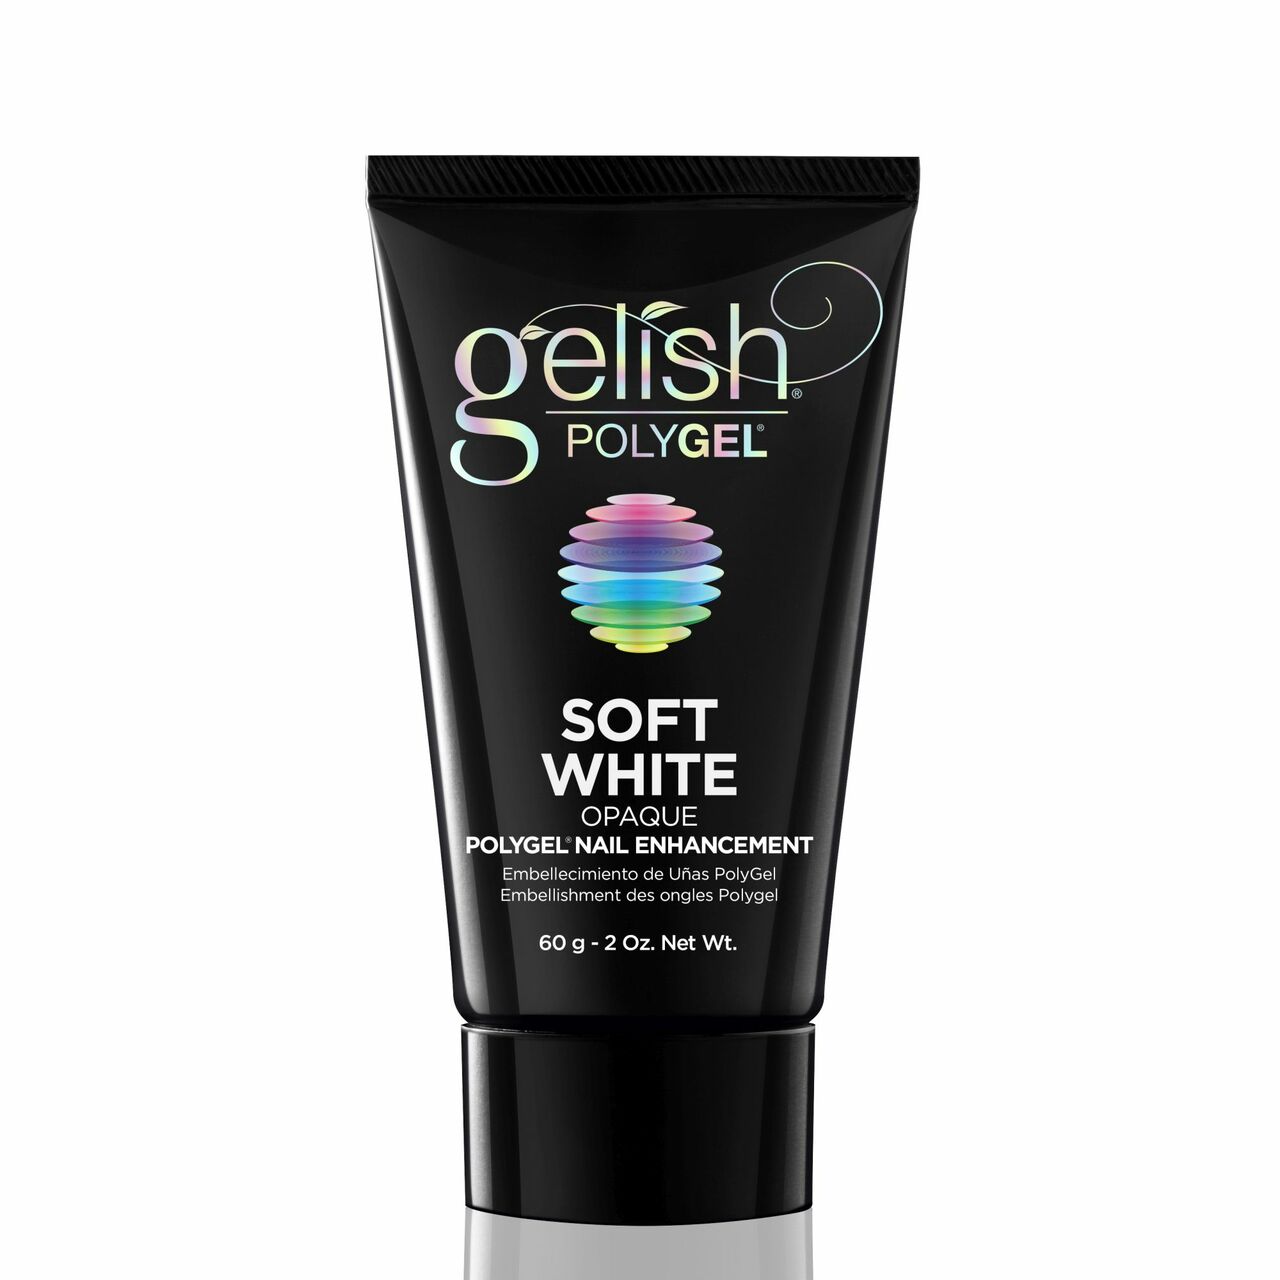 Gelish Polygel - Soft White 2 oz